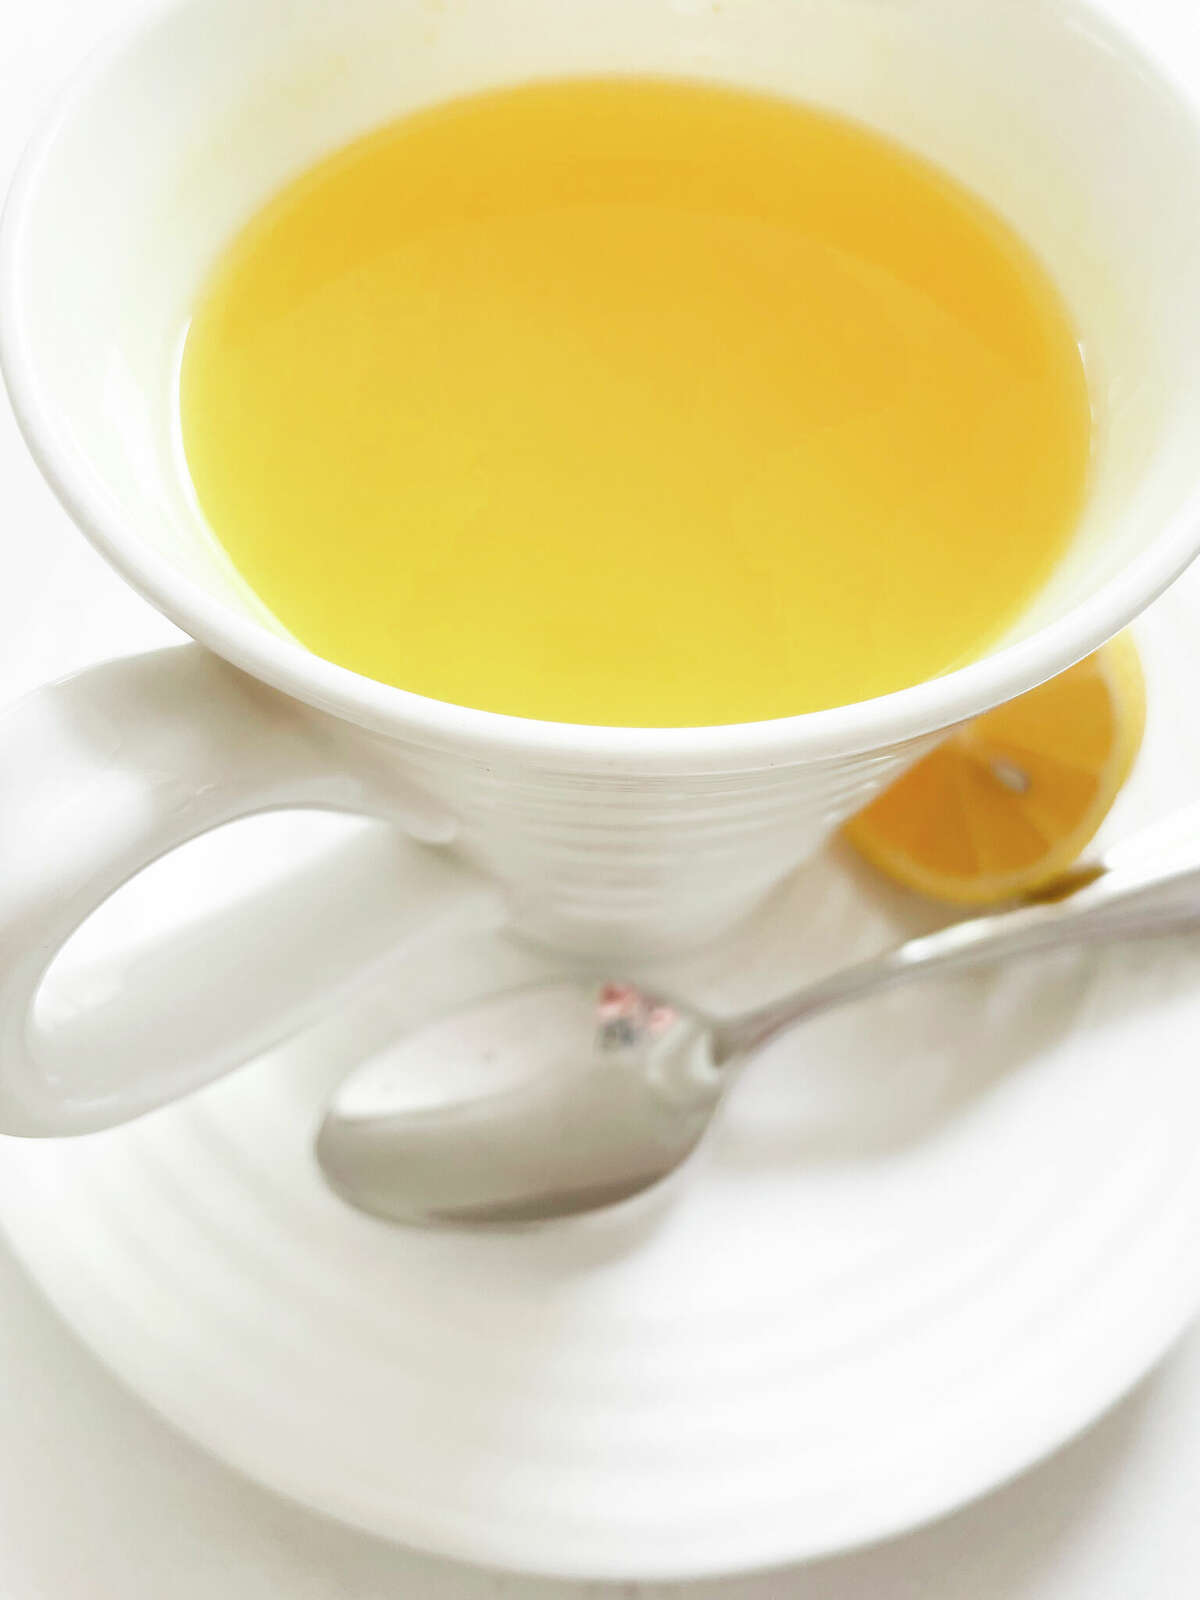 Ginger turmeric lemon tea